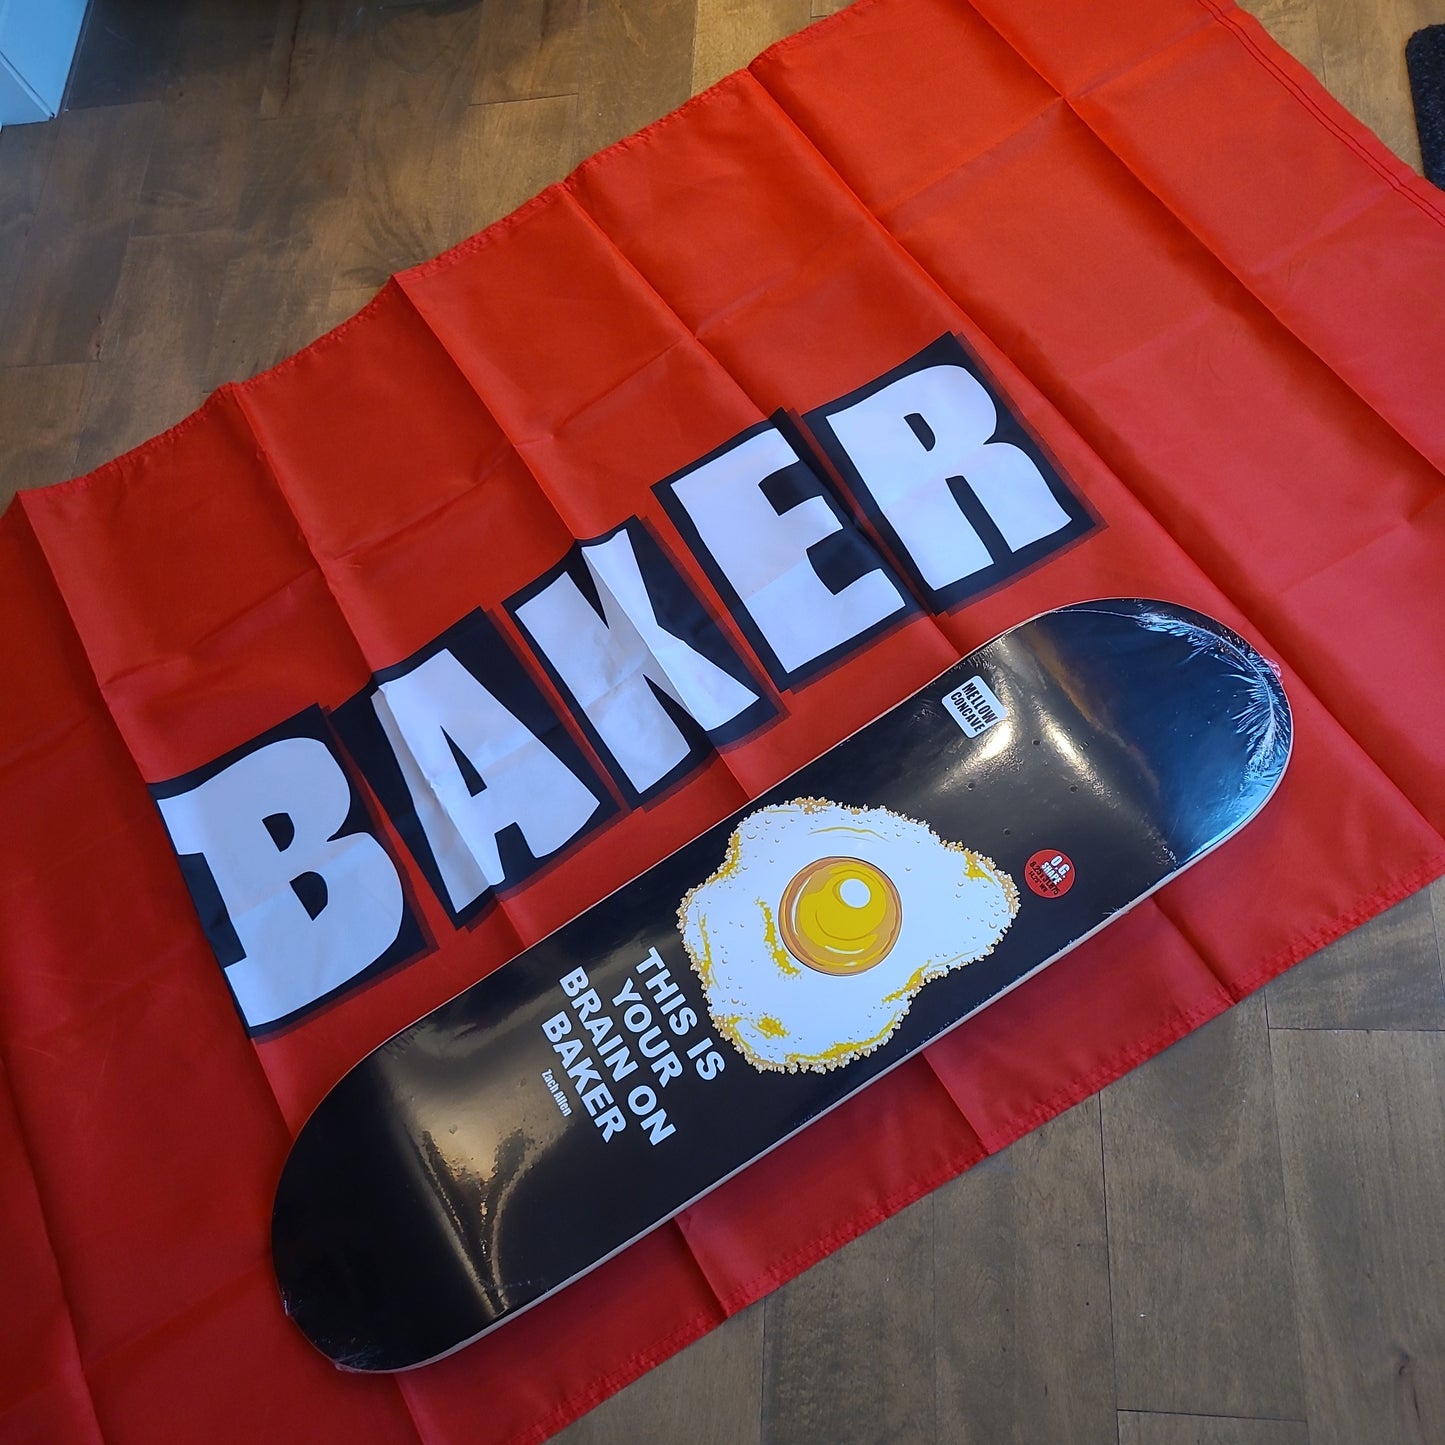 Baker - 3' x 5' Flag